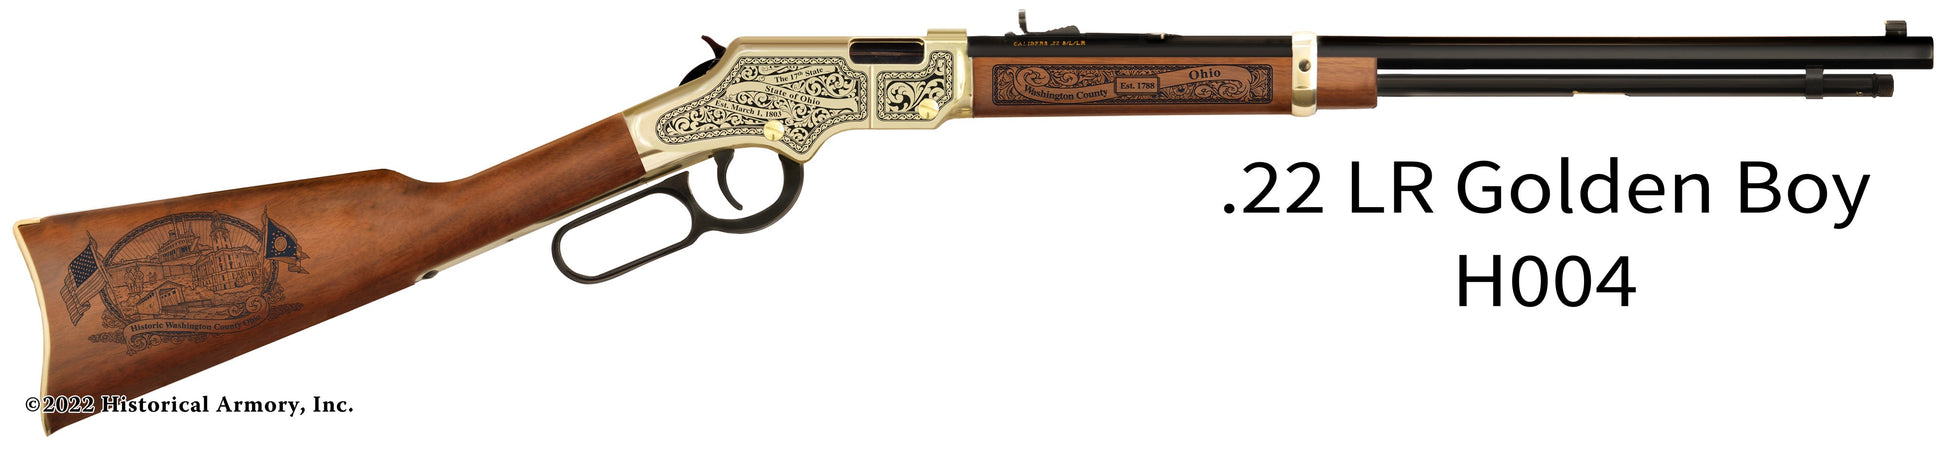 Washington County Ohio Engraved Henry Golden Boy Rifle